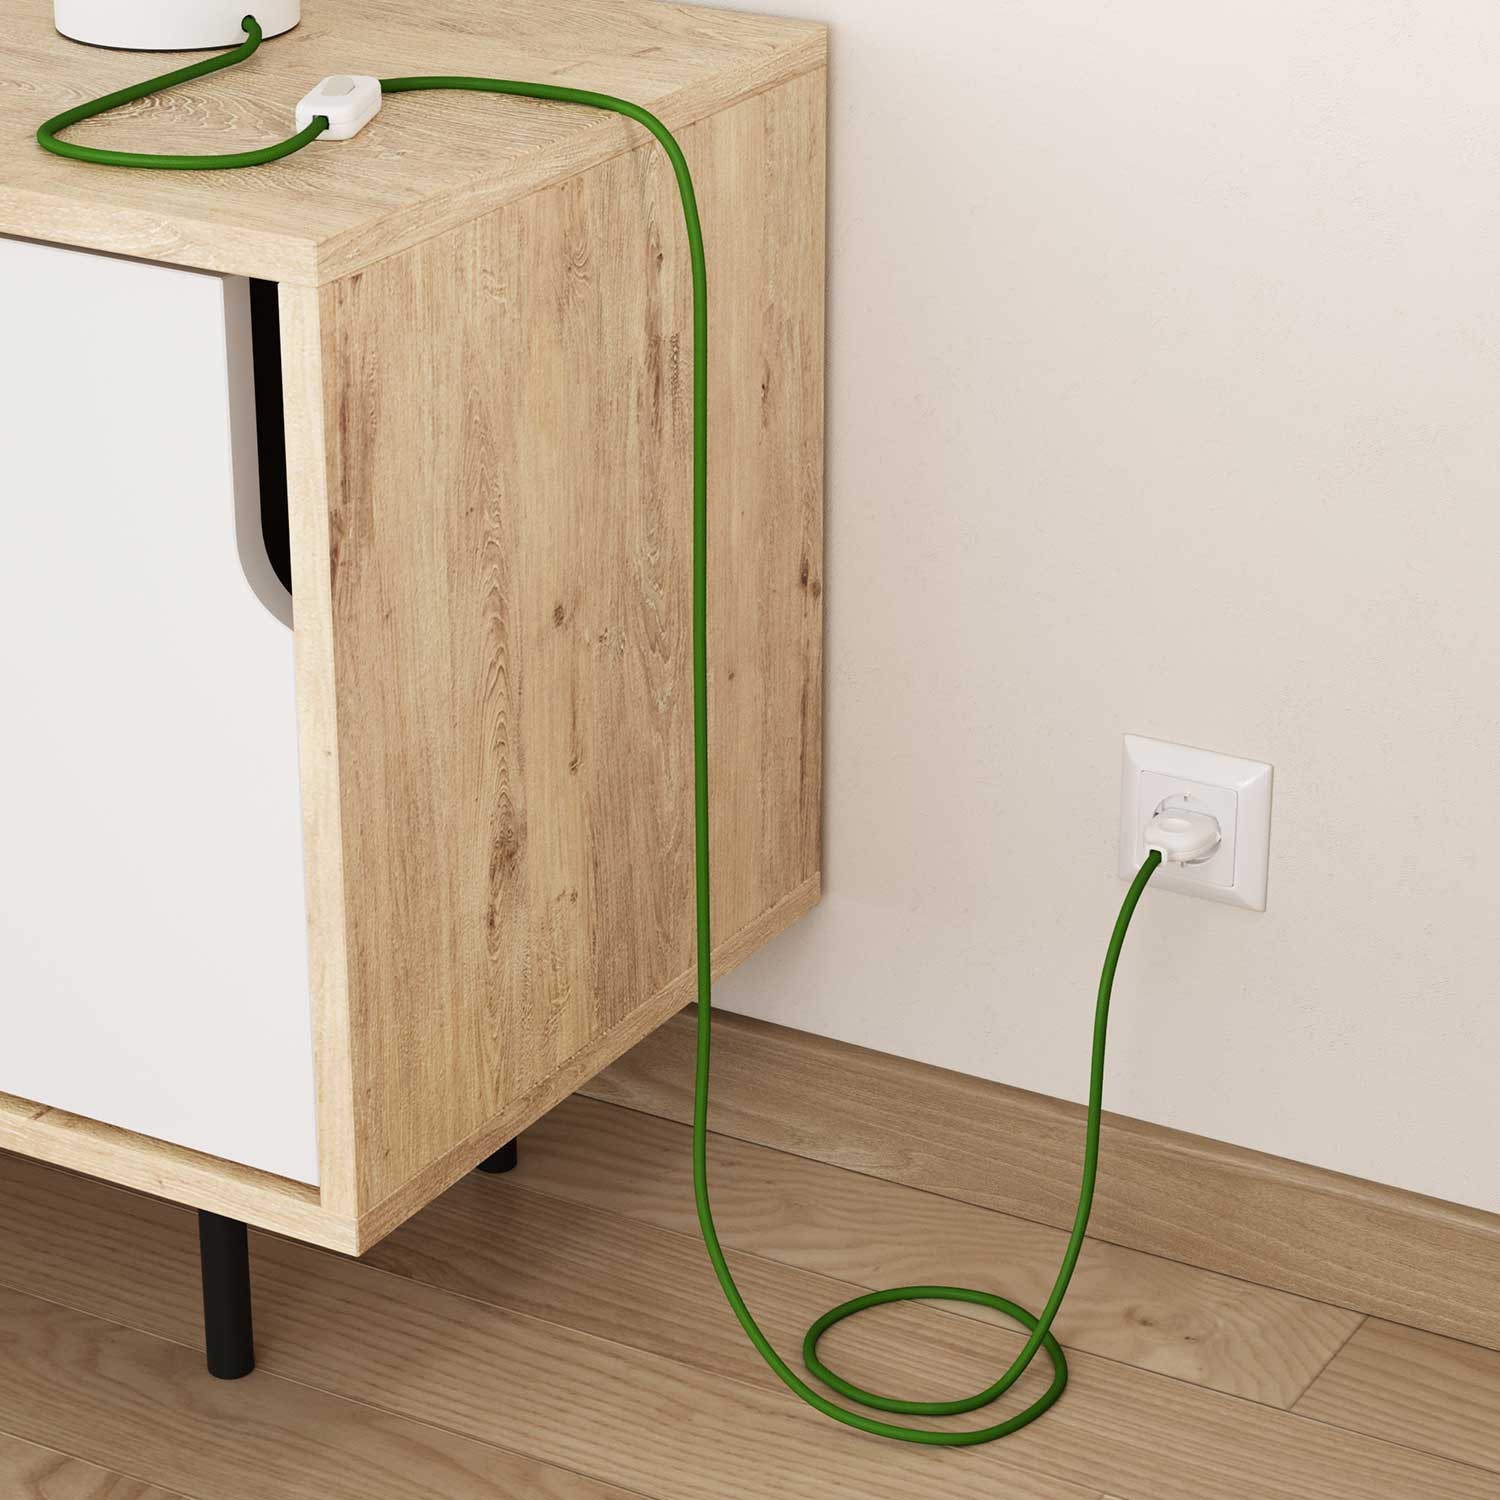 Okrogel tekstilen električen kabel RM18 - limeta zelen